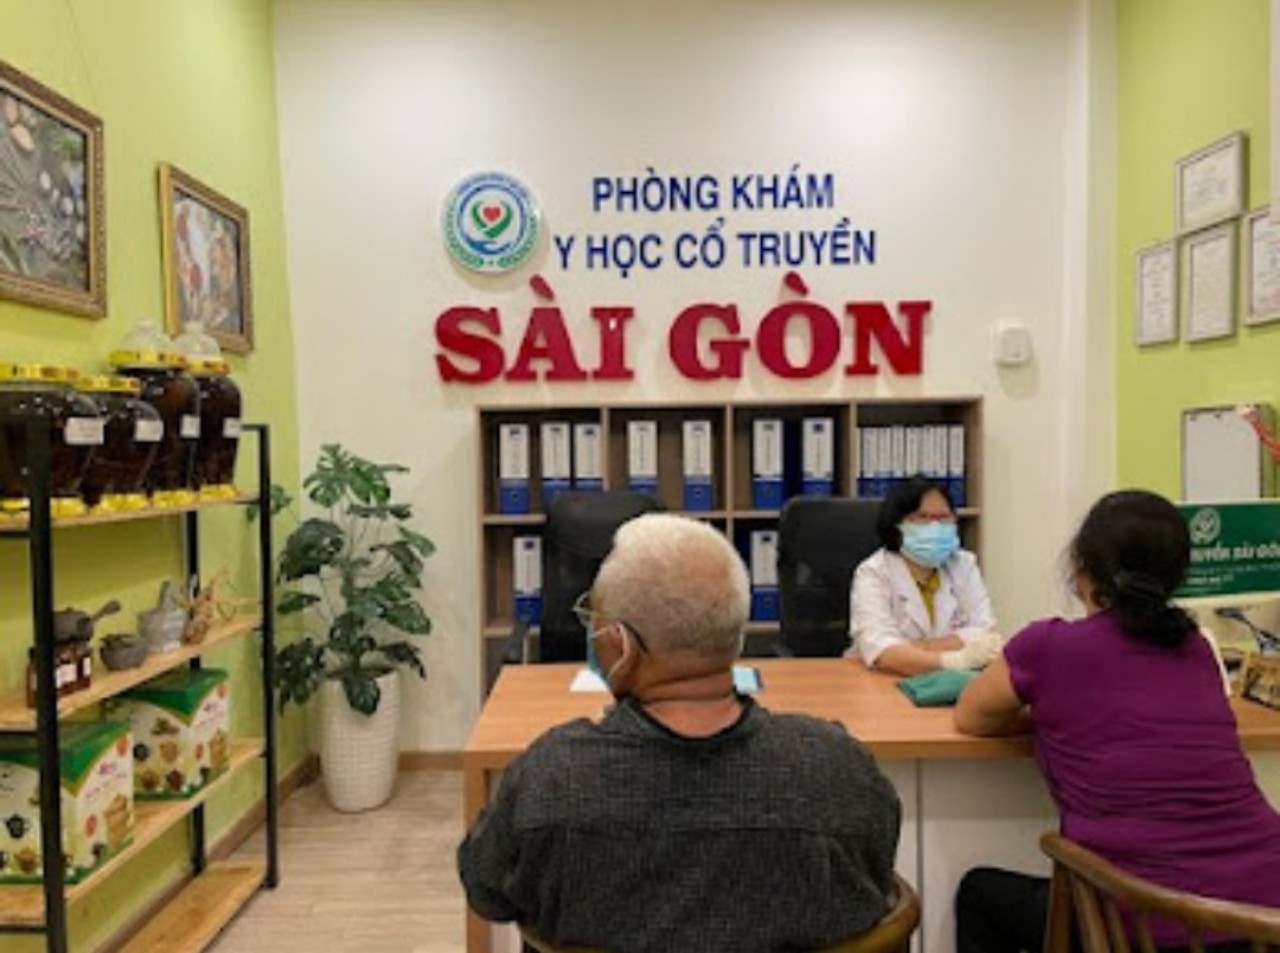 Phòng khám Y học cổ truyền Sài Gòn bị Thanh tra Bộ Y tế xử phạt